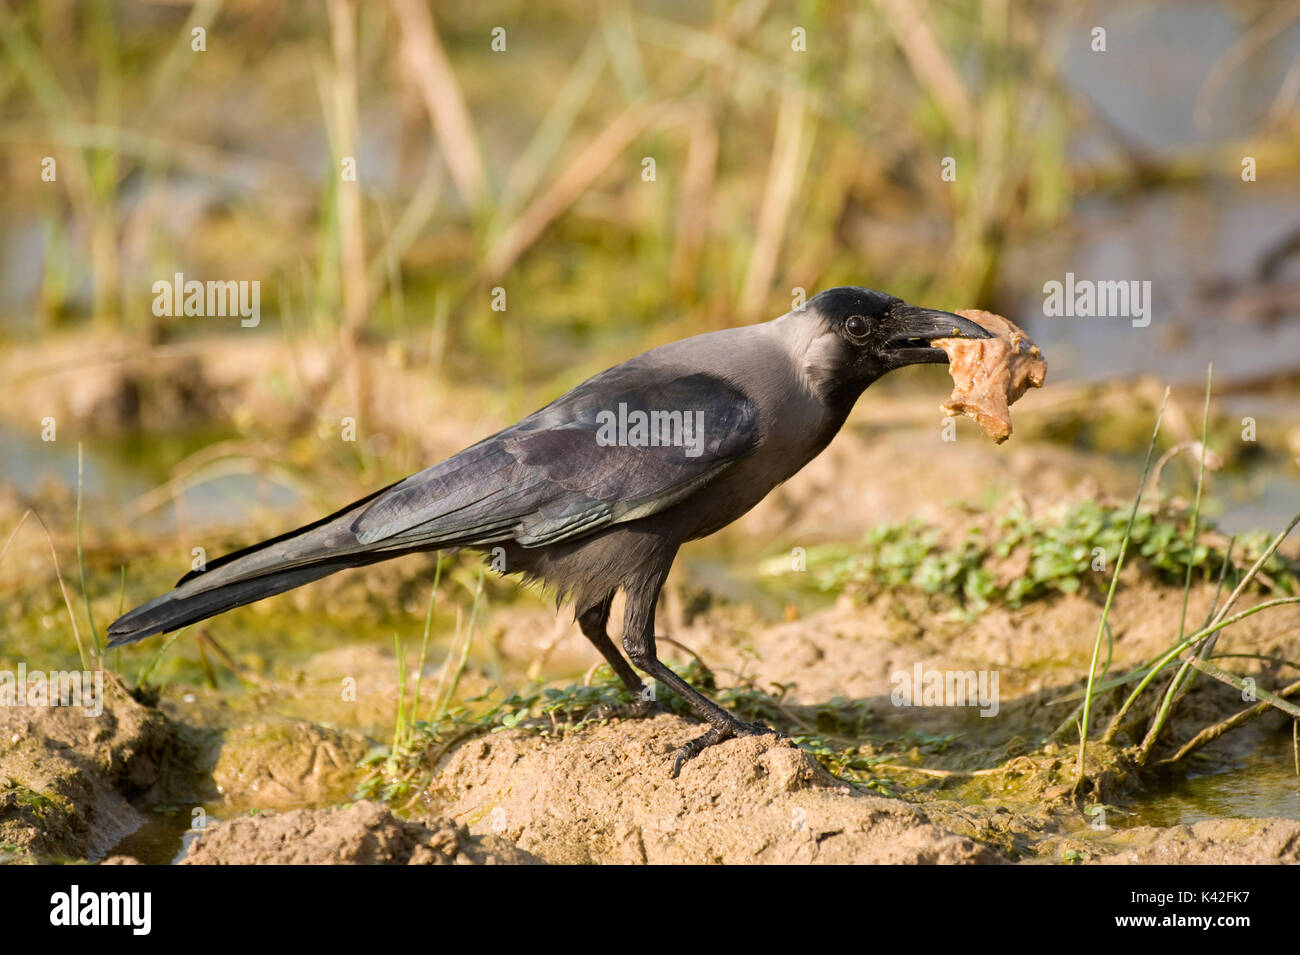 House Crow, Corvus splendens, Nalsarovar Bird Sanctuary, Gujarat, Inde, Colombo Crow, se nourrissant d'aliments récupérés Banque D'Images